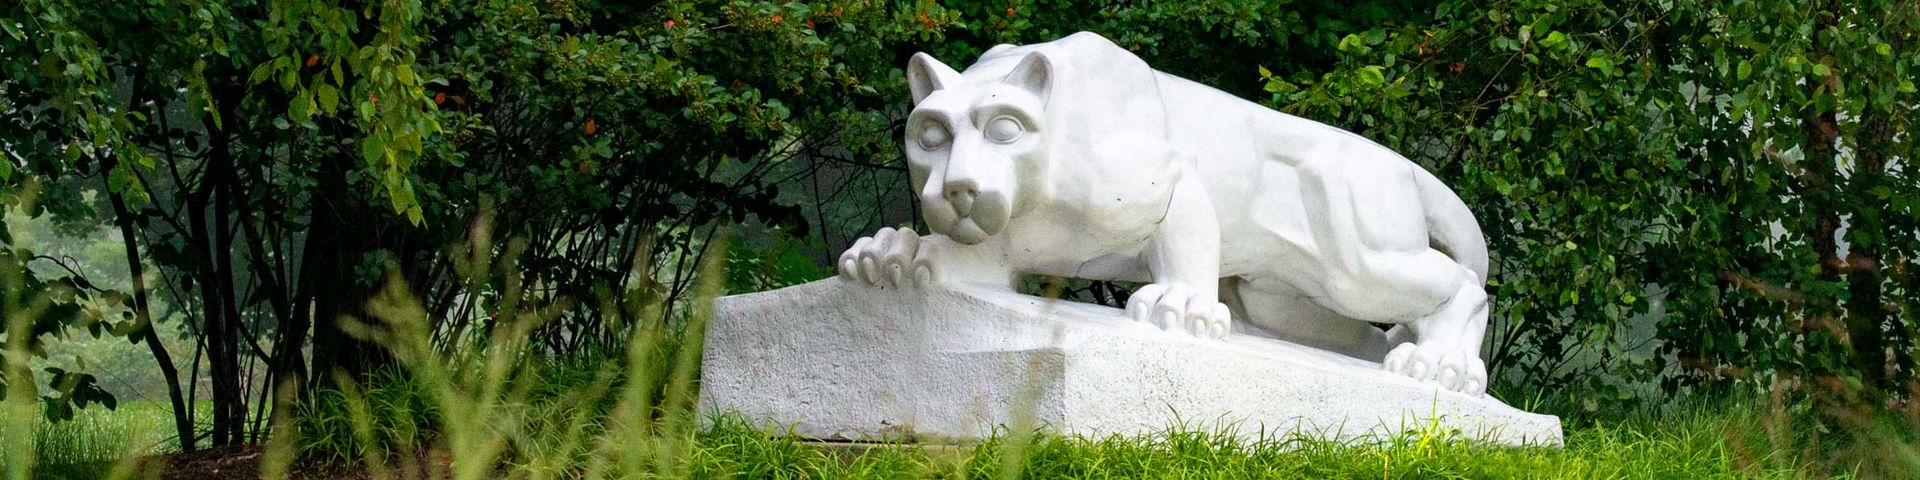 Penn State Beaver lion shrine